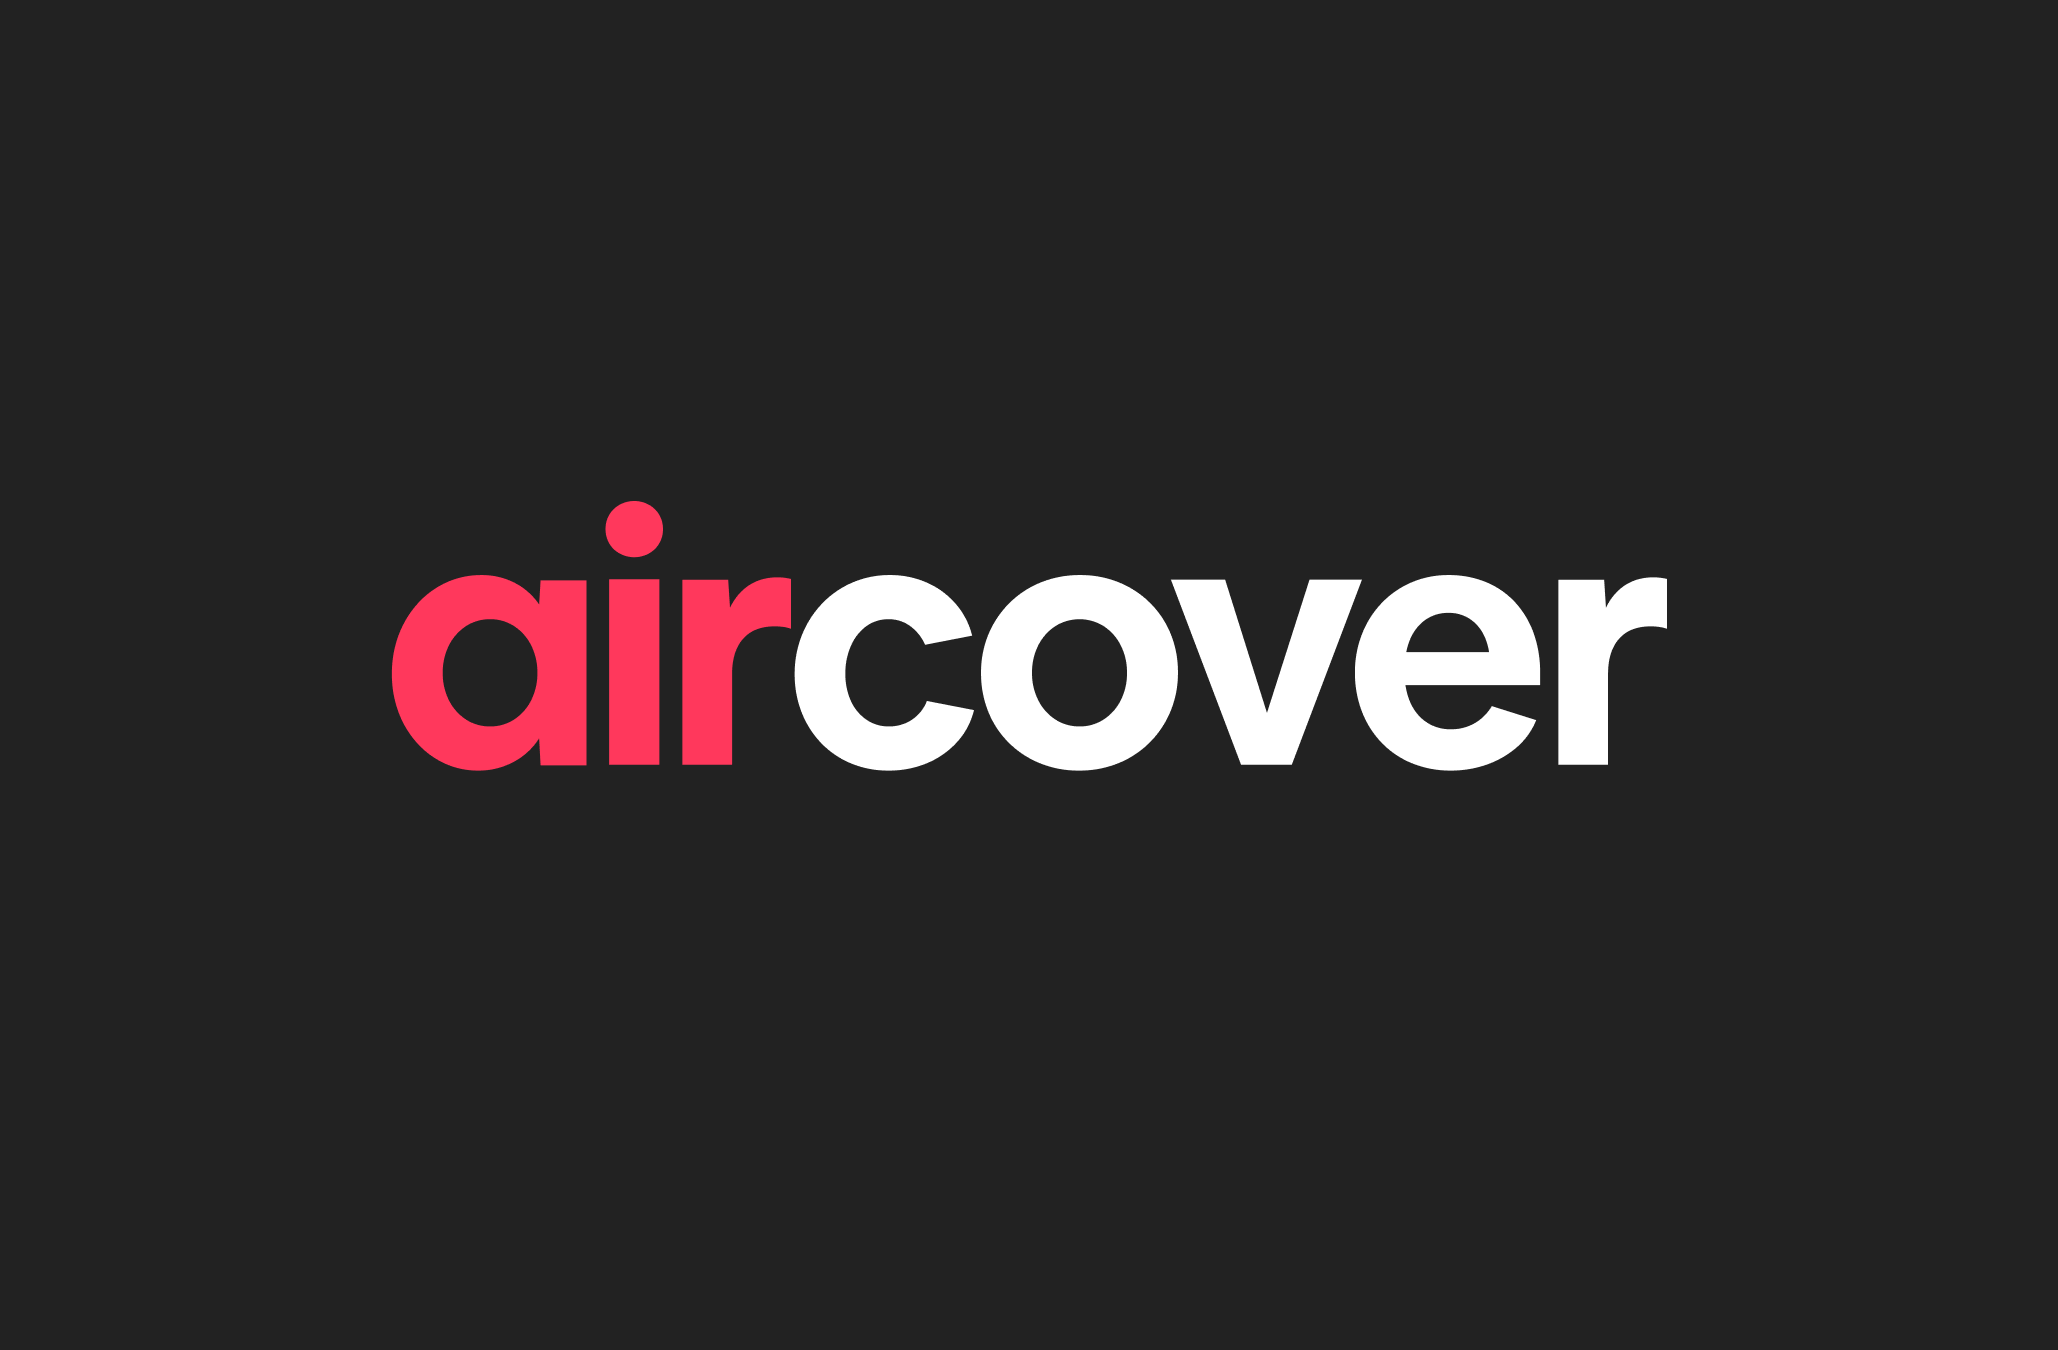 O logotipo do AirCover, em letras vermelhas e brancas, sobre um fundo preto.